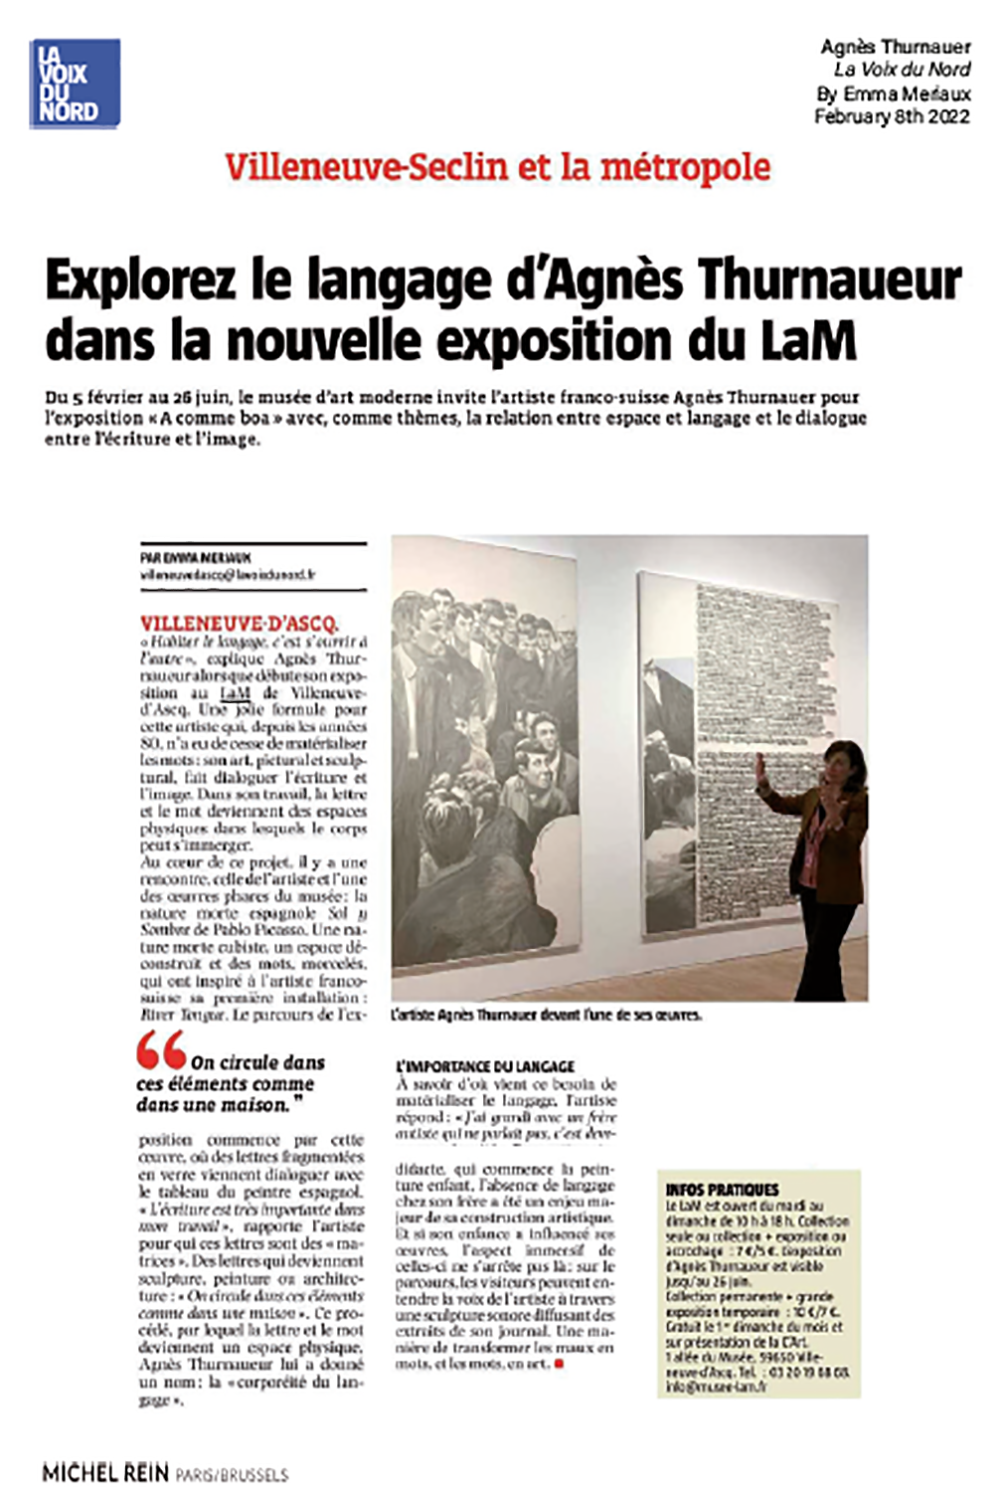 Explorez le language d'Agnès Thurnauer dans la nouvelle exposition du LaM - La Voix du Nord